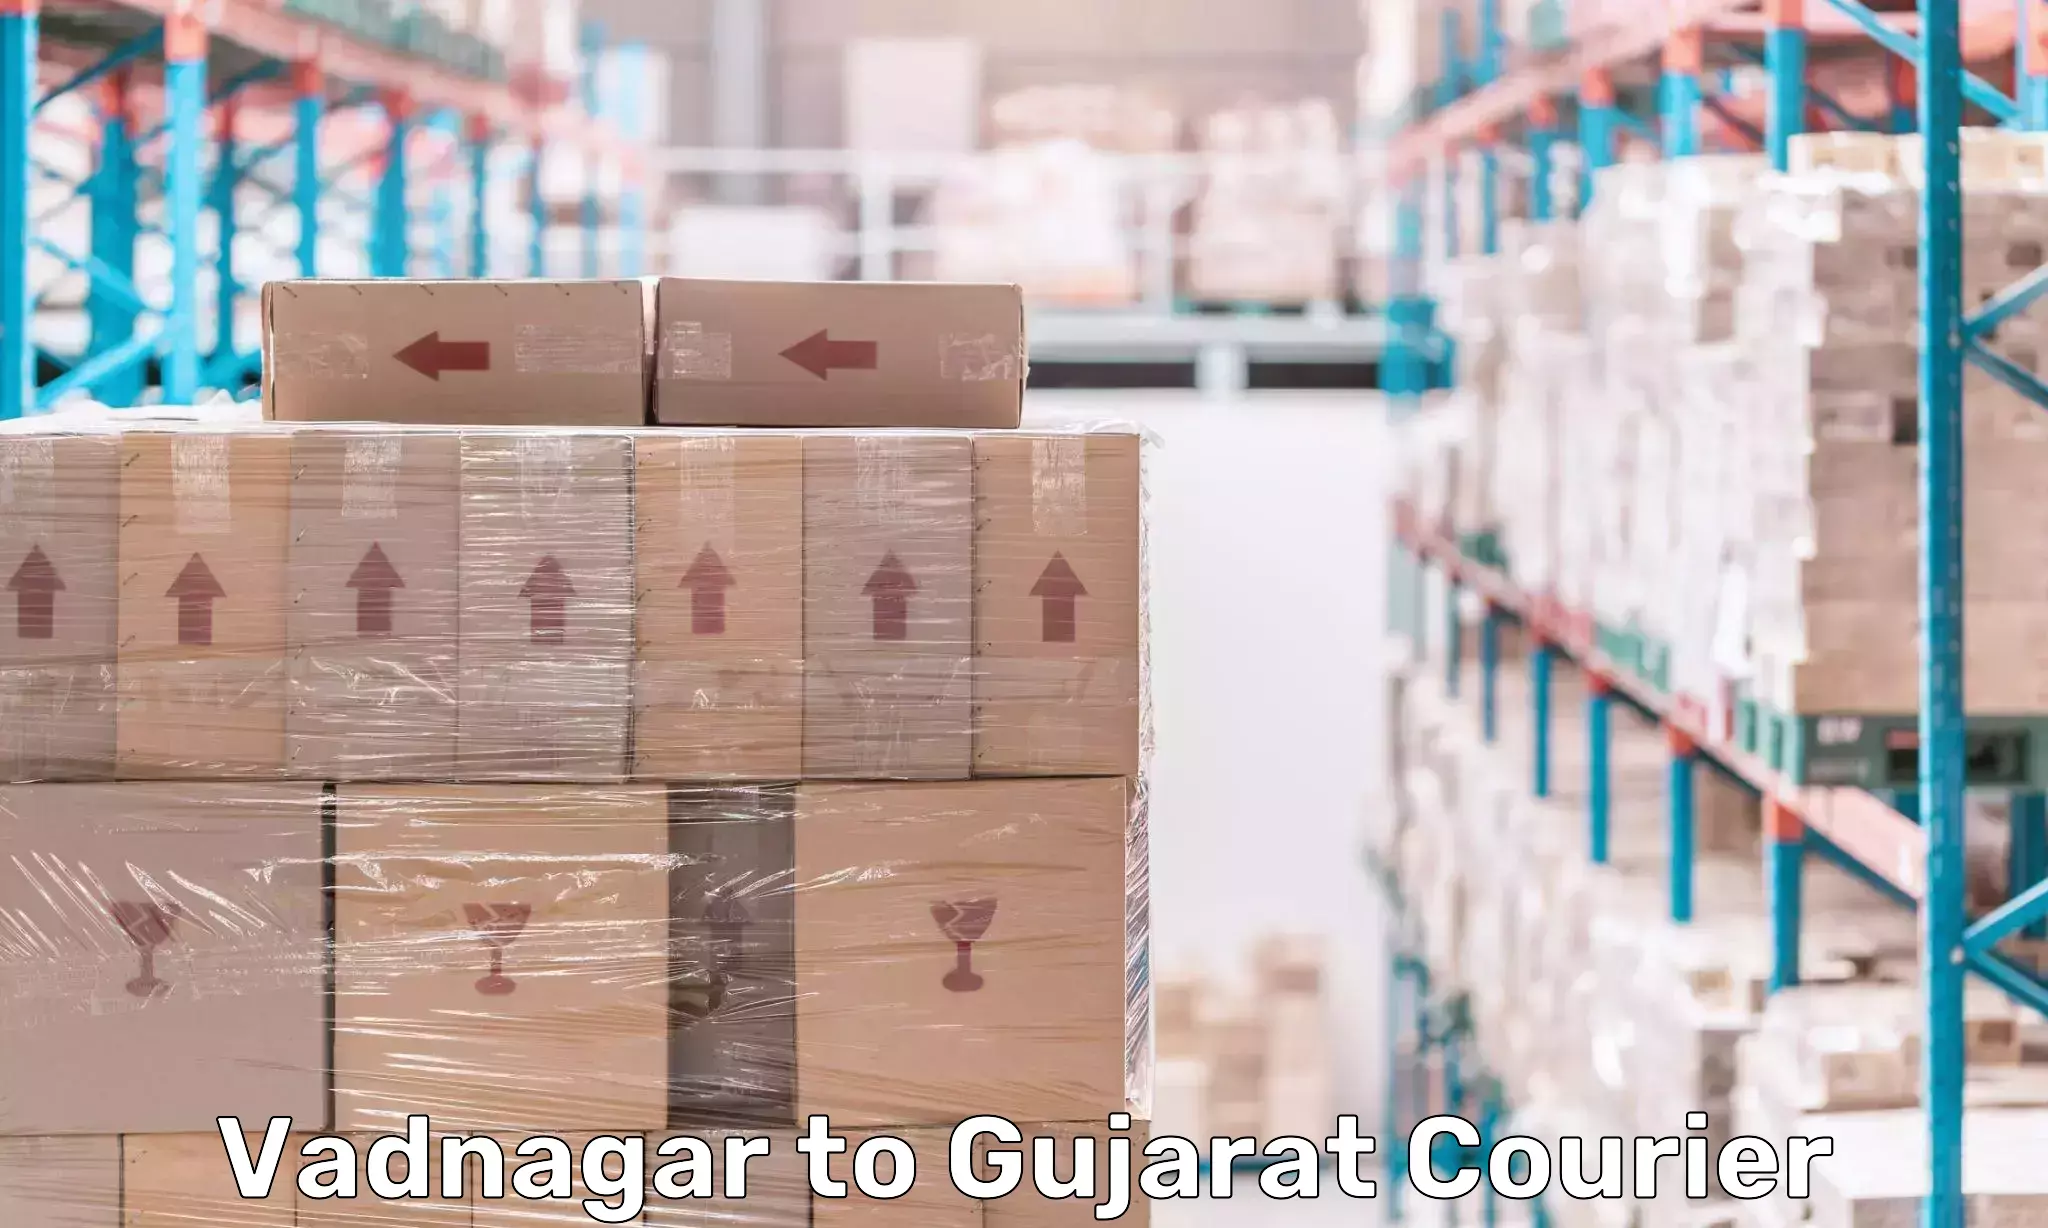 Reliable courier service Vadnagar to Gandhinagar